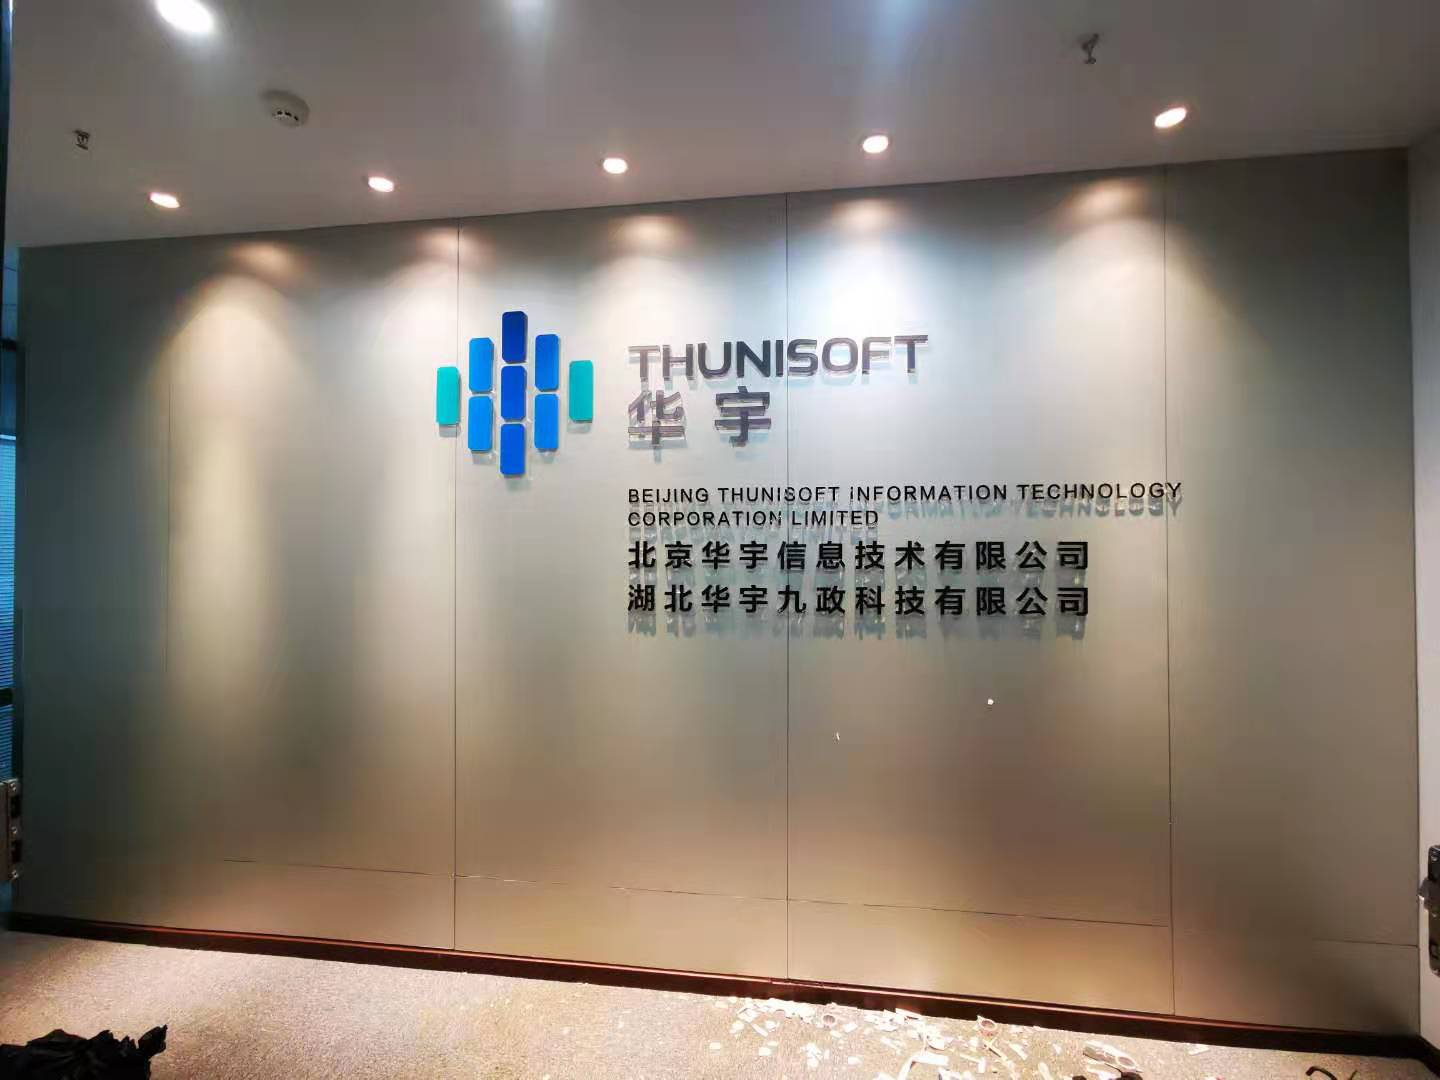 武汉创意汇广告公司给北京华宇信息技术有限公司安装背景墙